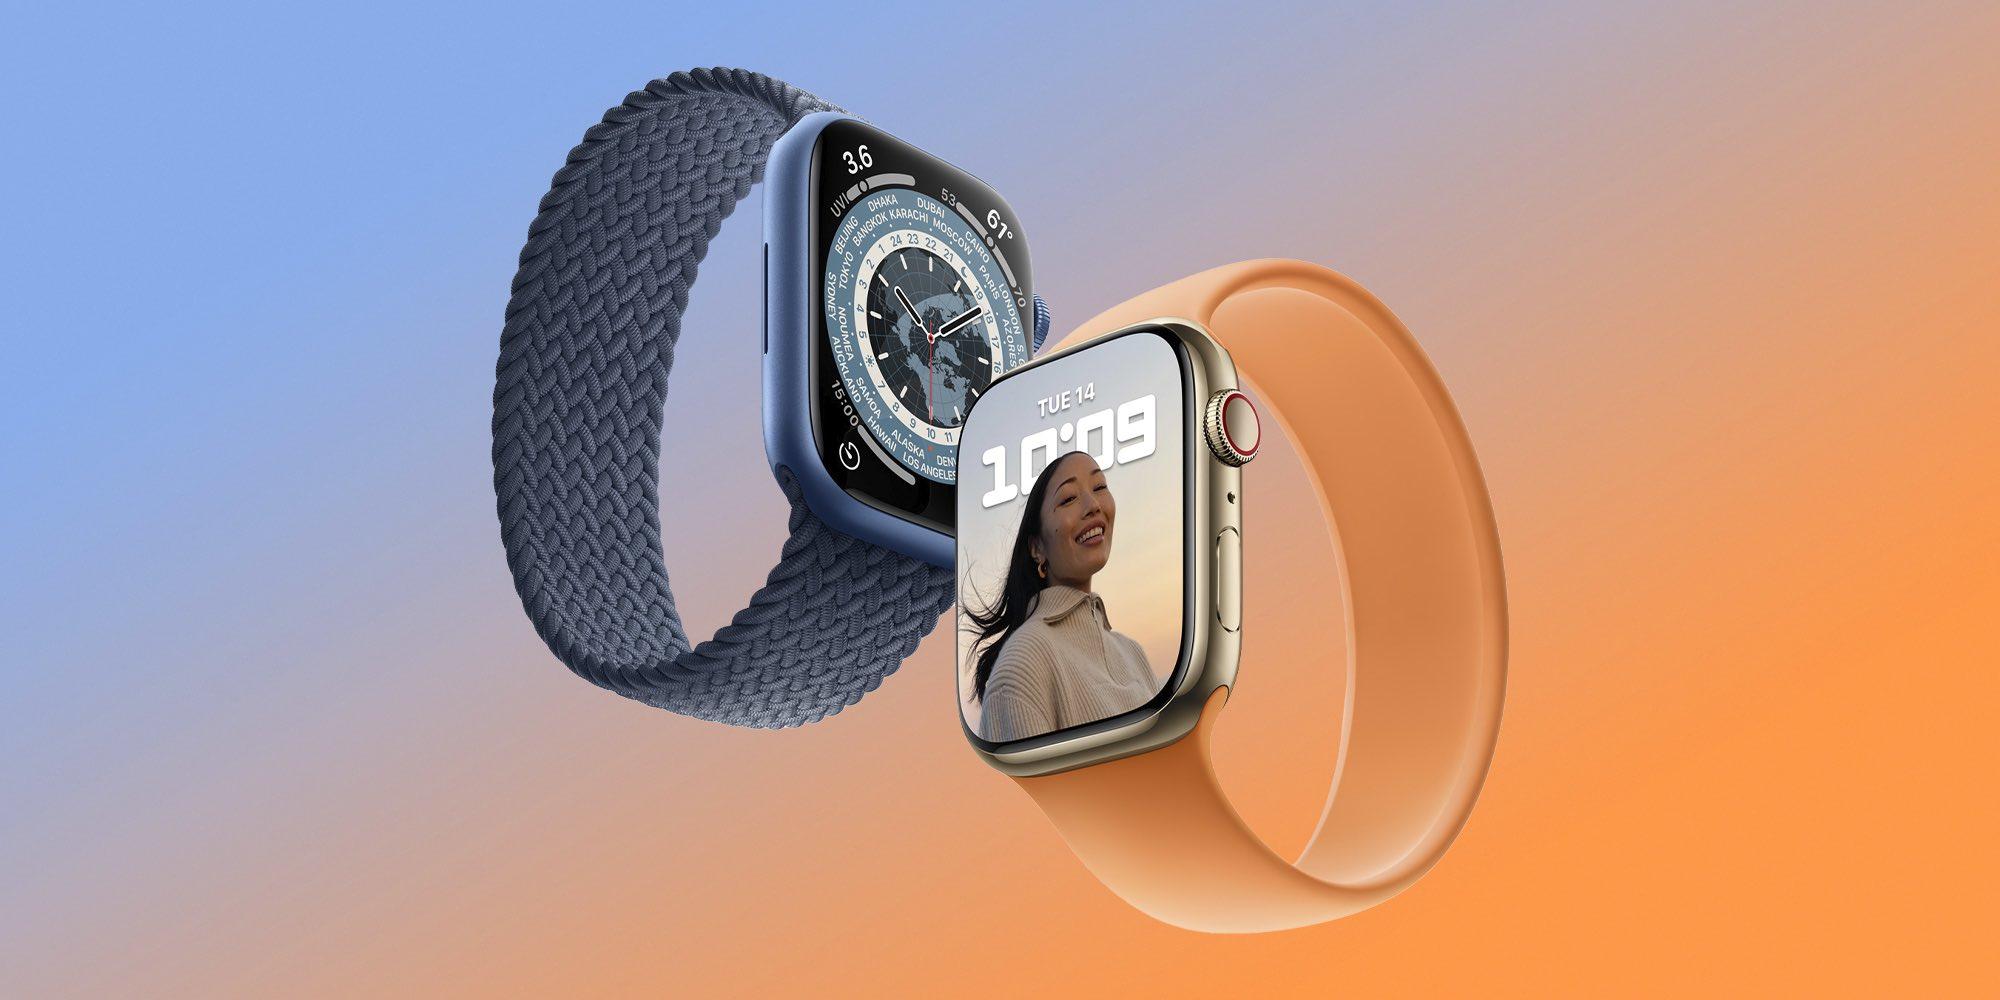 Гурман: Apple Watch може мати супутникове підключення в майбутній моделі